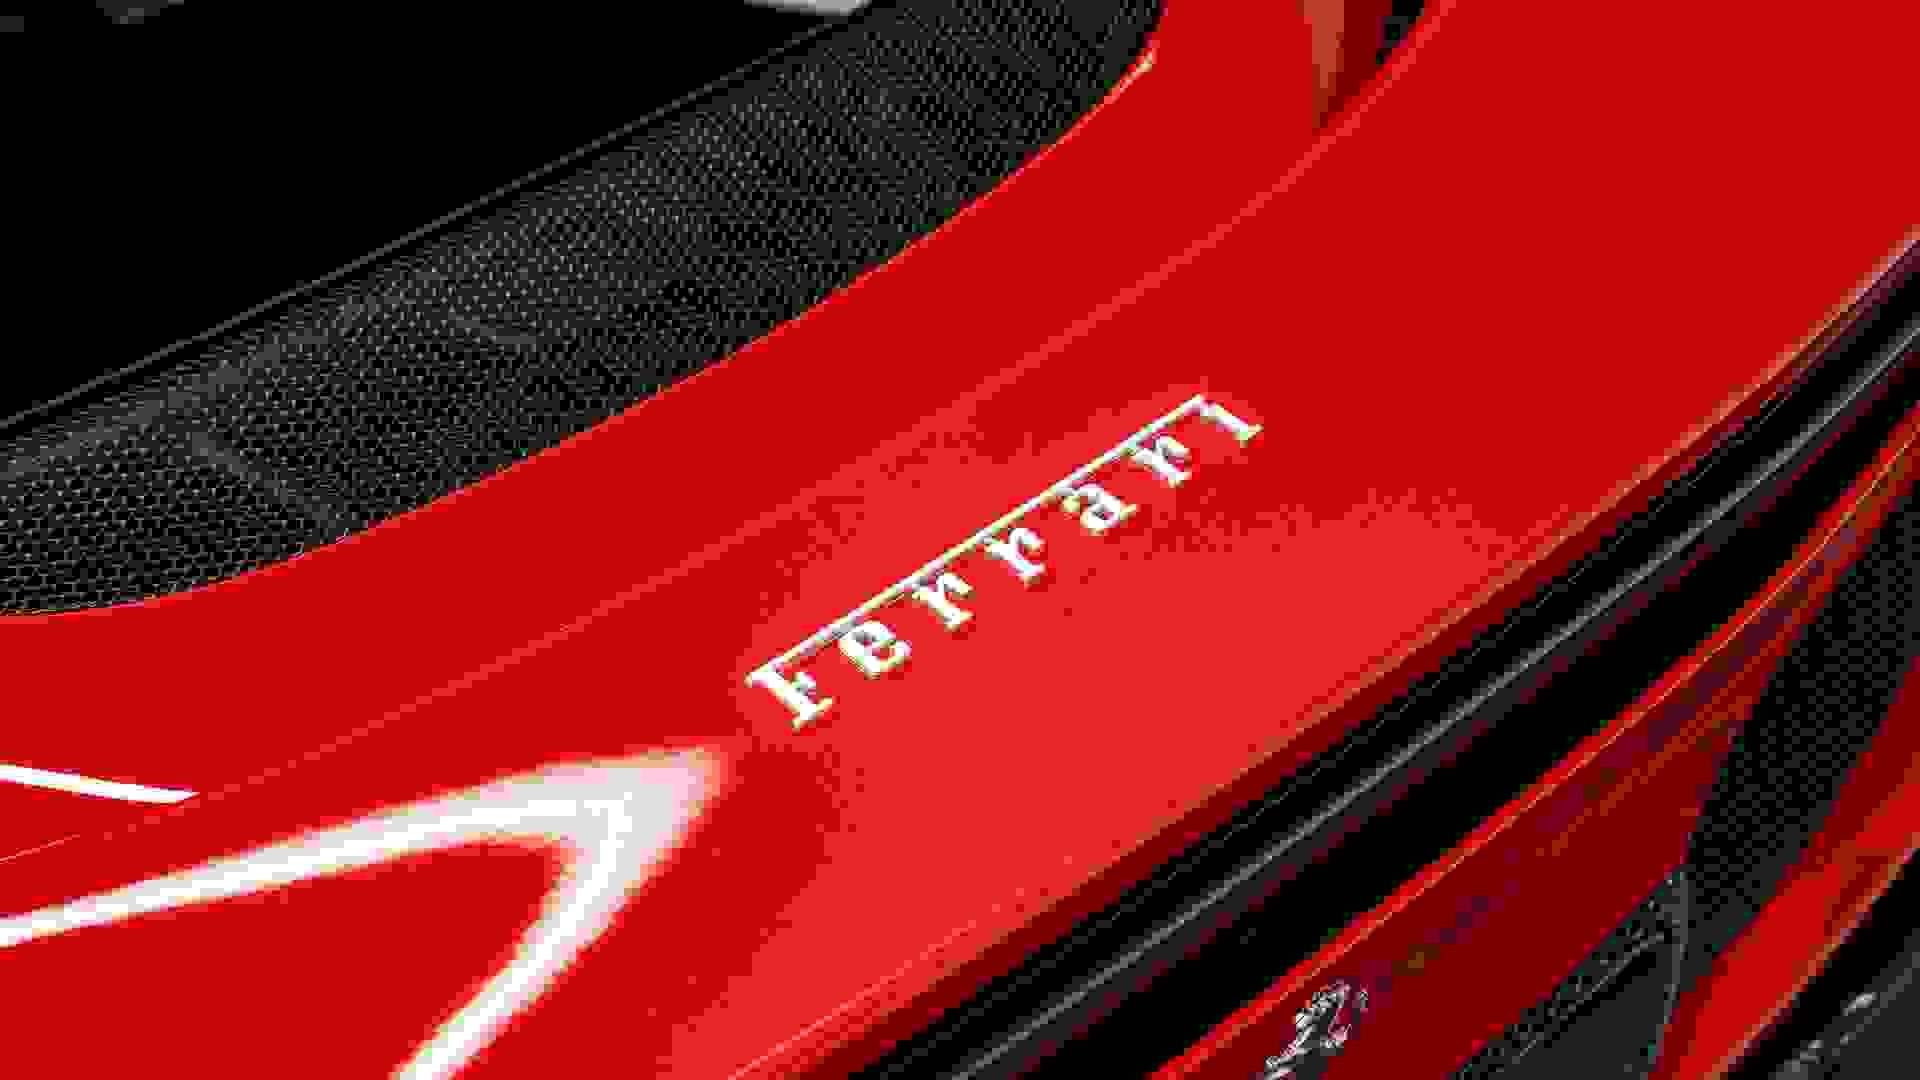 Ferrari 296 Photo 1f17ccab-63b2-4d27-8570-d1786696f92a.jpg